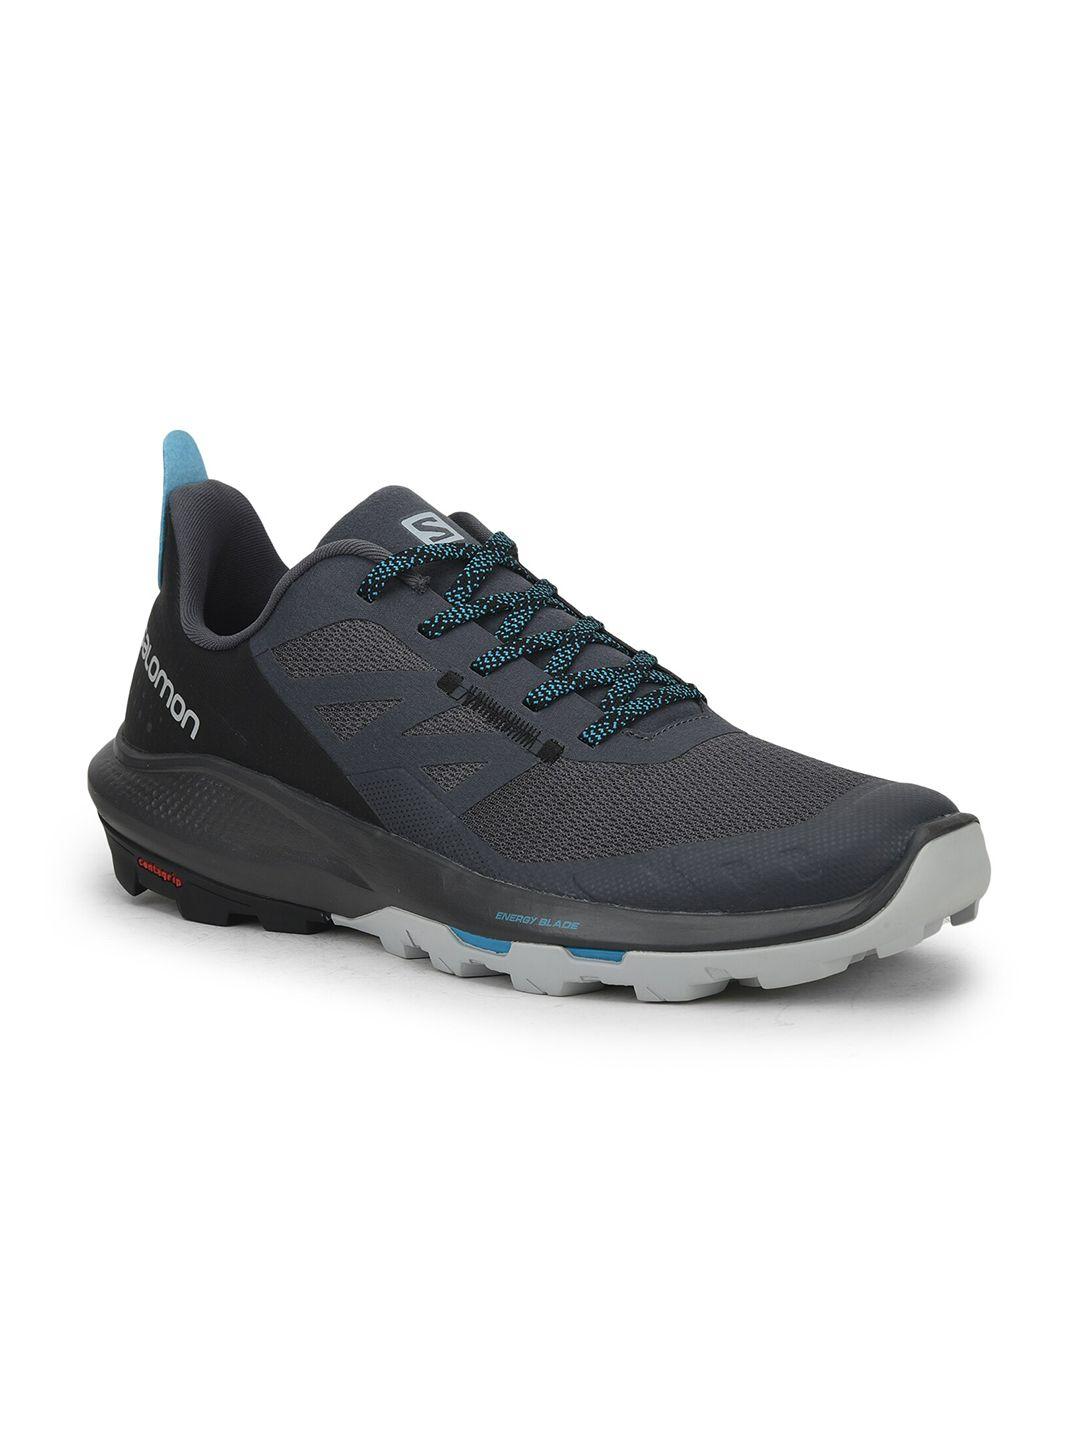 Salomon Men Outpulse Contagrip Technology Hiking Shoes